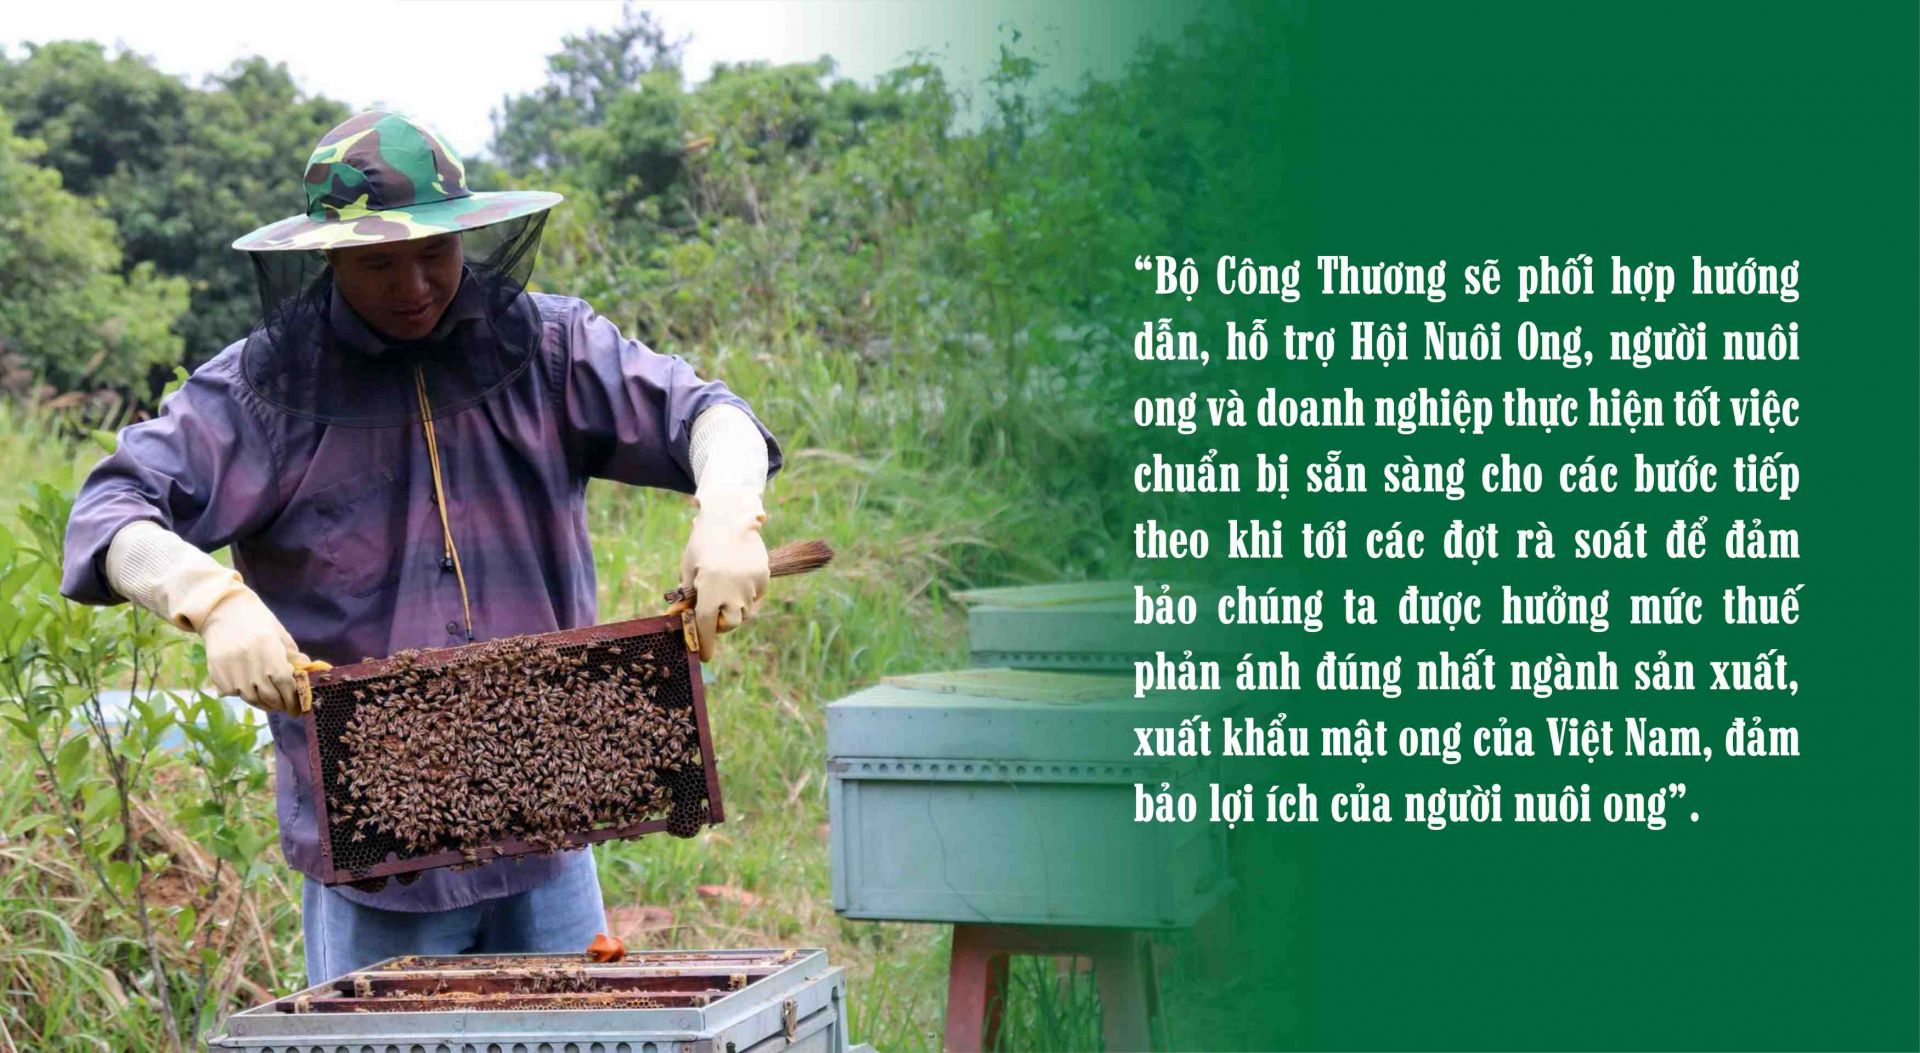 Từ chuyện mật ong xuất sang Hoa Kỳ nhìn ra nông sản Việt